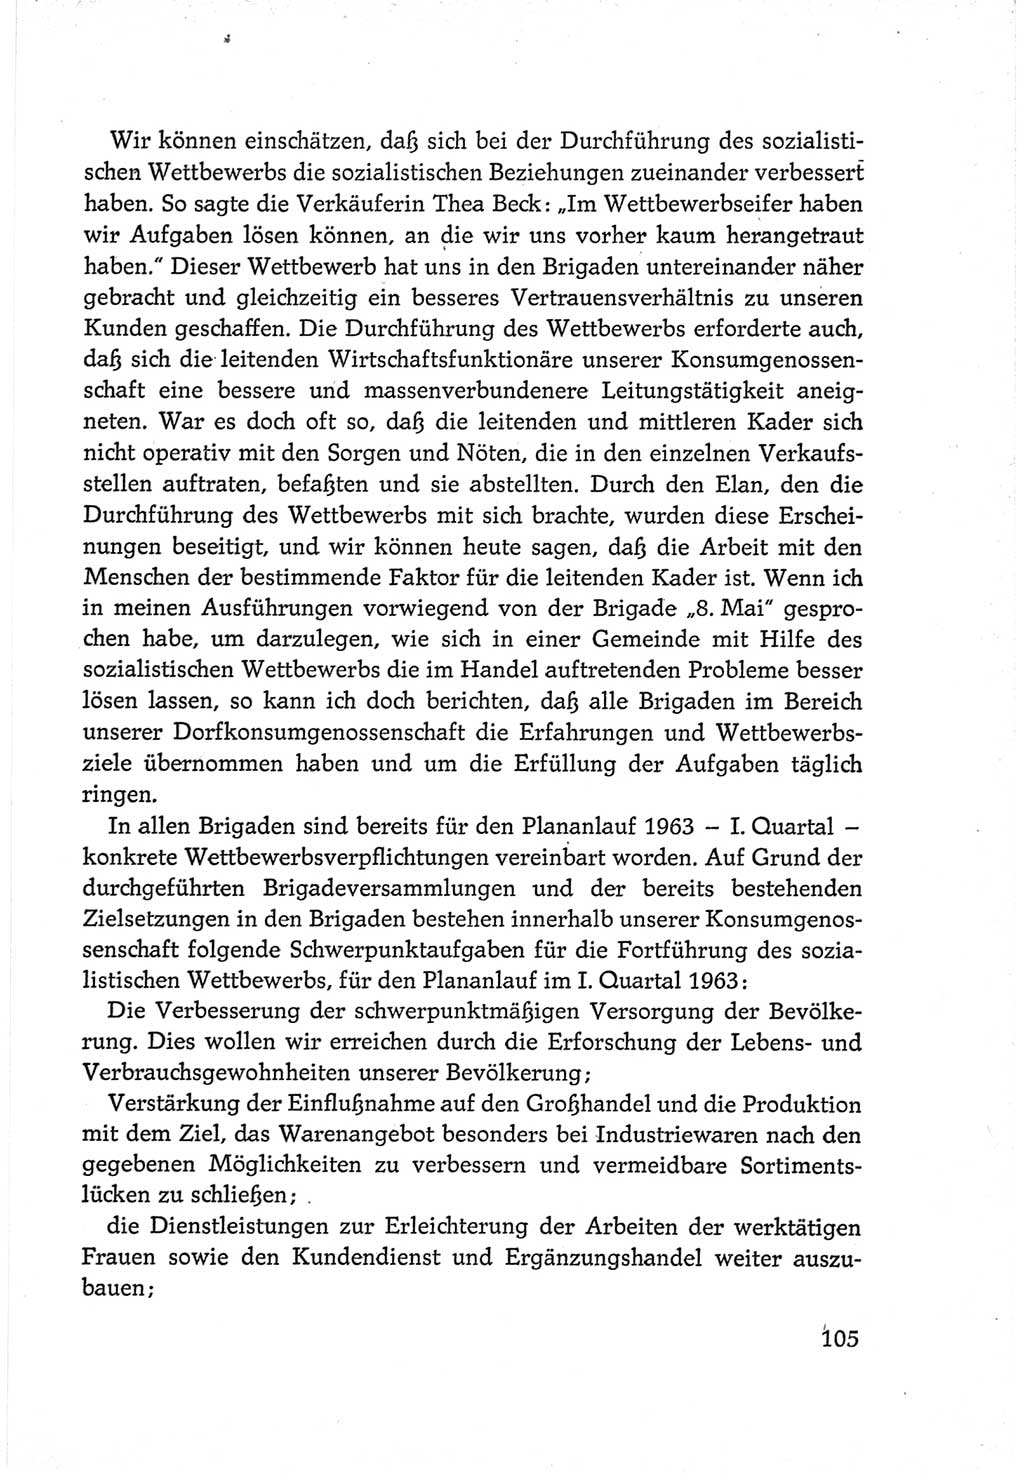 Protokoll der Verhandlungen des Ⅵ. Parteitages der Sozialistischen Einheitspartei Deutschlands (SED) [Deutsche Demokratische Republik (DDR)] 1963, Band Ⅲ, Seite 105 (Prot. Verh. Ⅵ. PT SED DDR 1963, Bd. Ⅲ, S. 105)